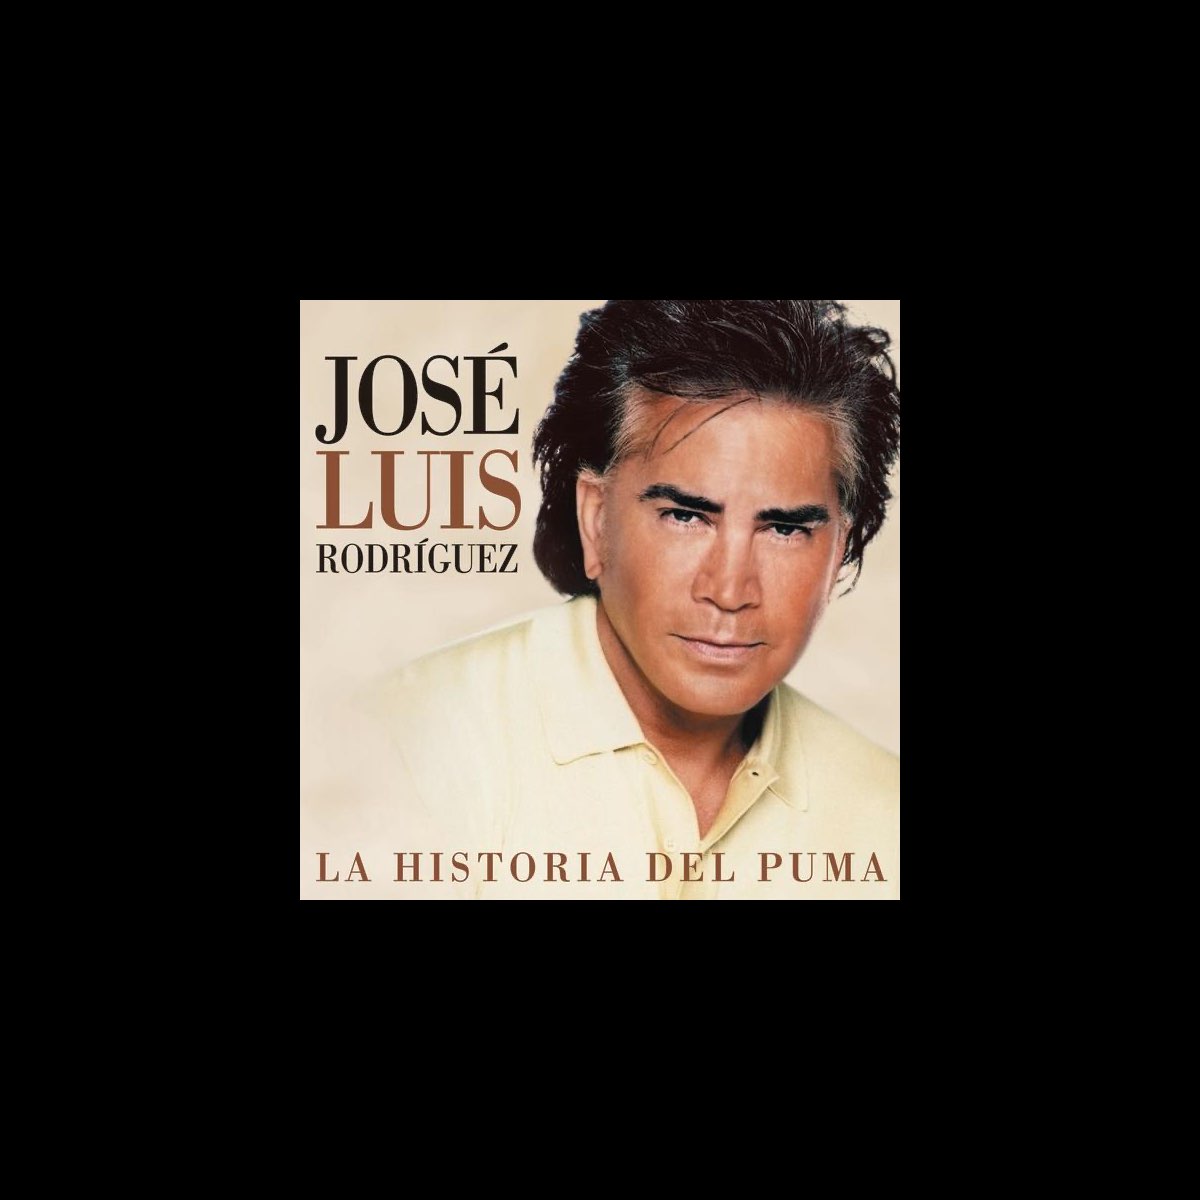 La Historia del Puma by José Luis Rodríguez on Apple Music